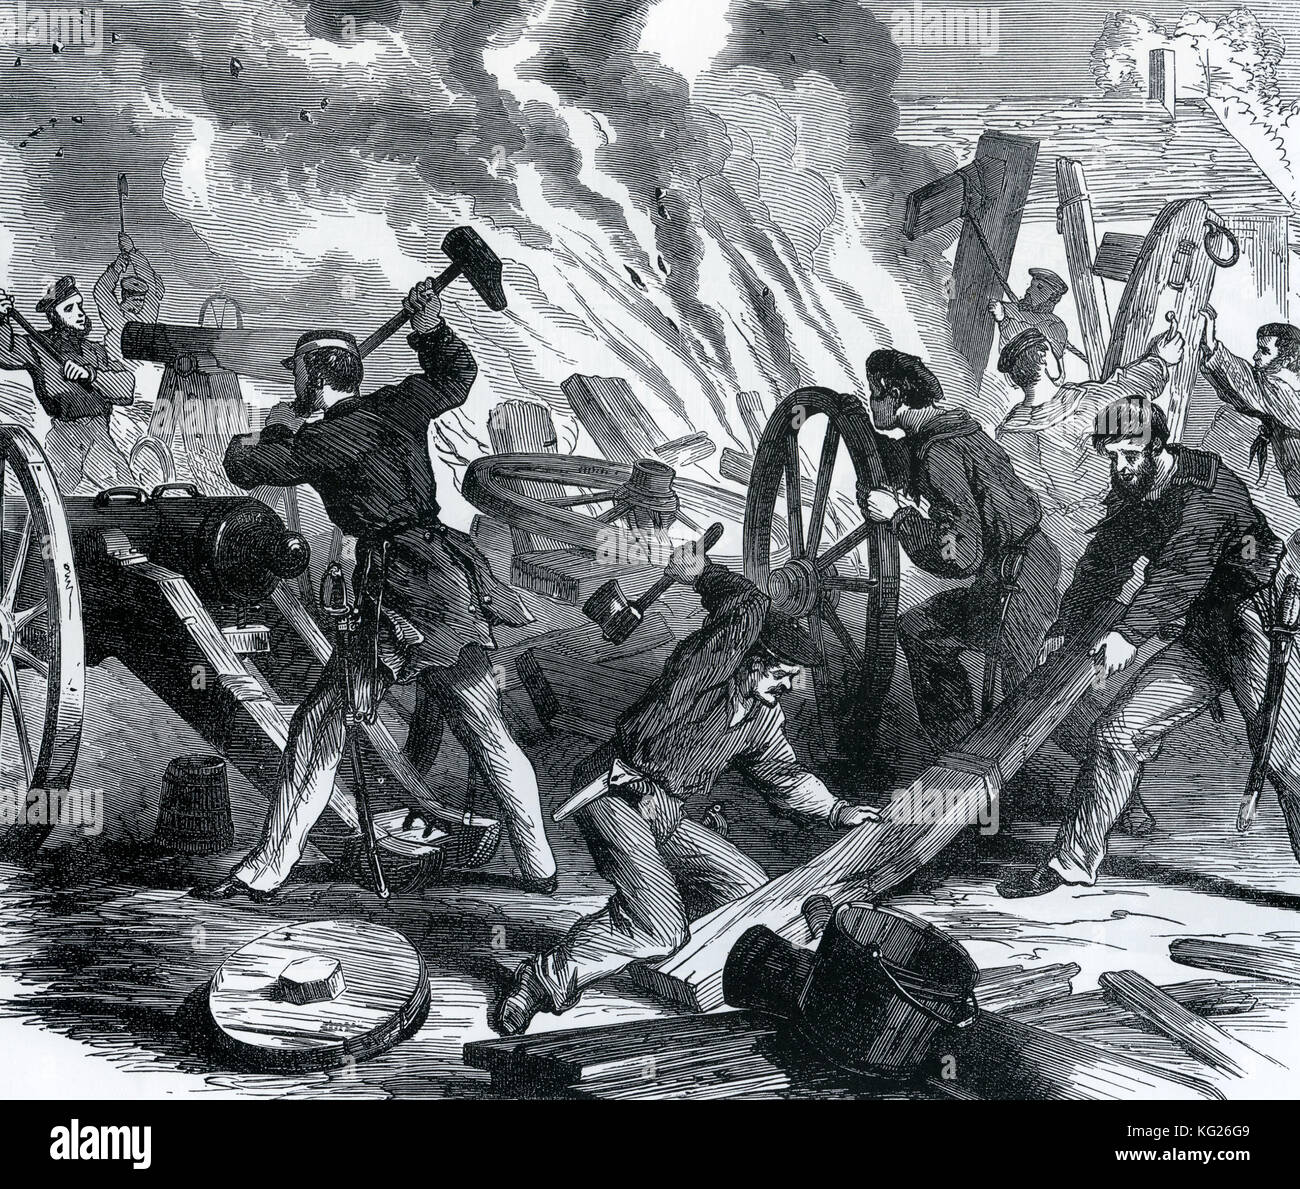 GUERRA CIVIL americana: Un partido de asalto de la Unión desde el cañonero Seneca destruyendo cañones y limeros en el arsenal confederado en Beaufort, Carolina del Sur el 14 de noviembre de 1861 Foto de stock